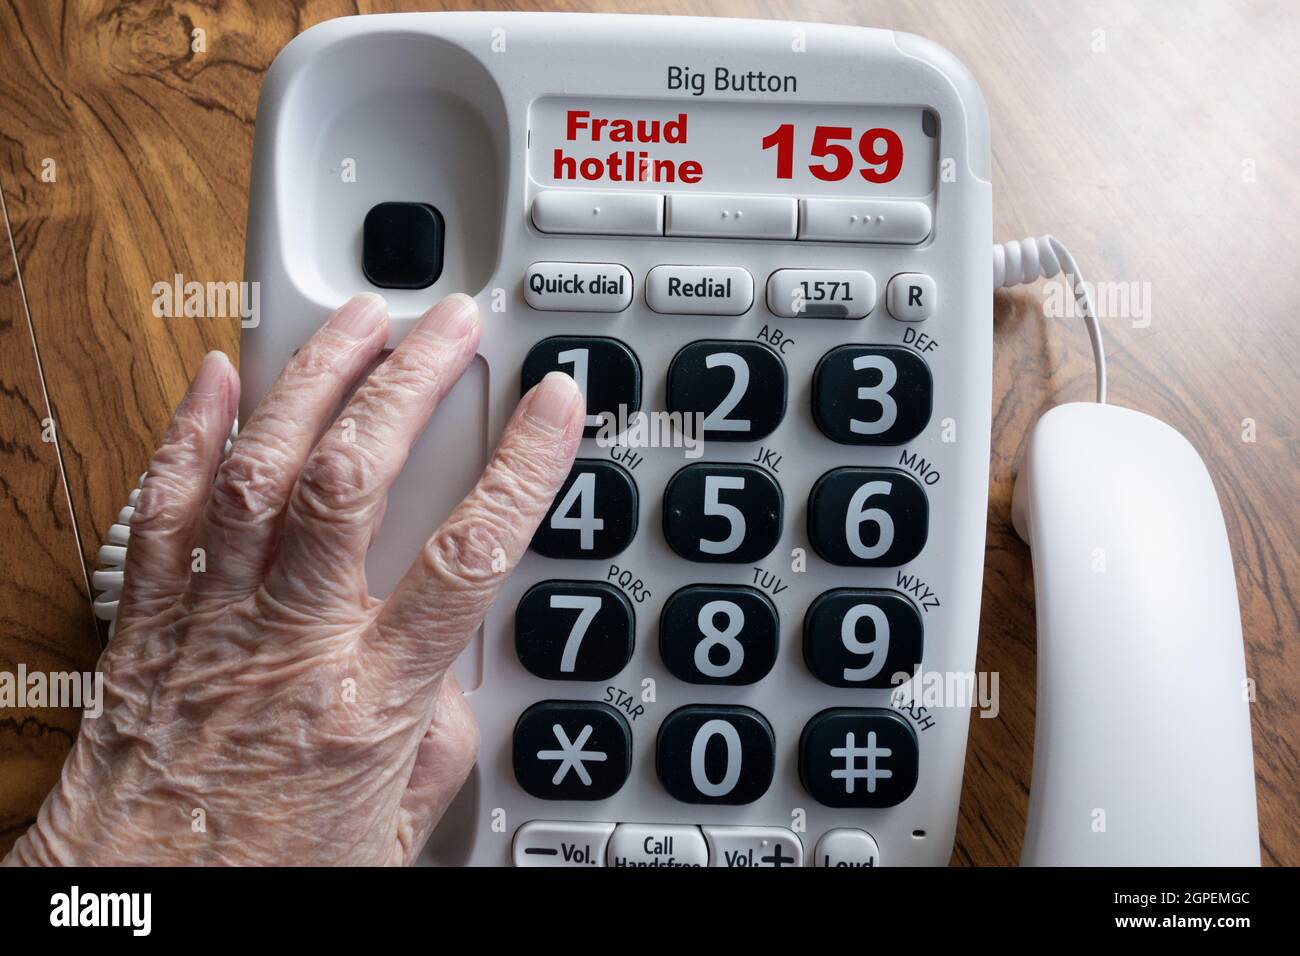 Ältere Frau, die 159, die neue Hotline für Bankbetrug, anruft. Der neue Dienst wird von Stop Scams UK - einer Koalition aus Banken- und Technologieunternehmen in Großbritannien - gefördert Stockfoto